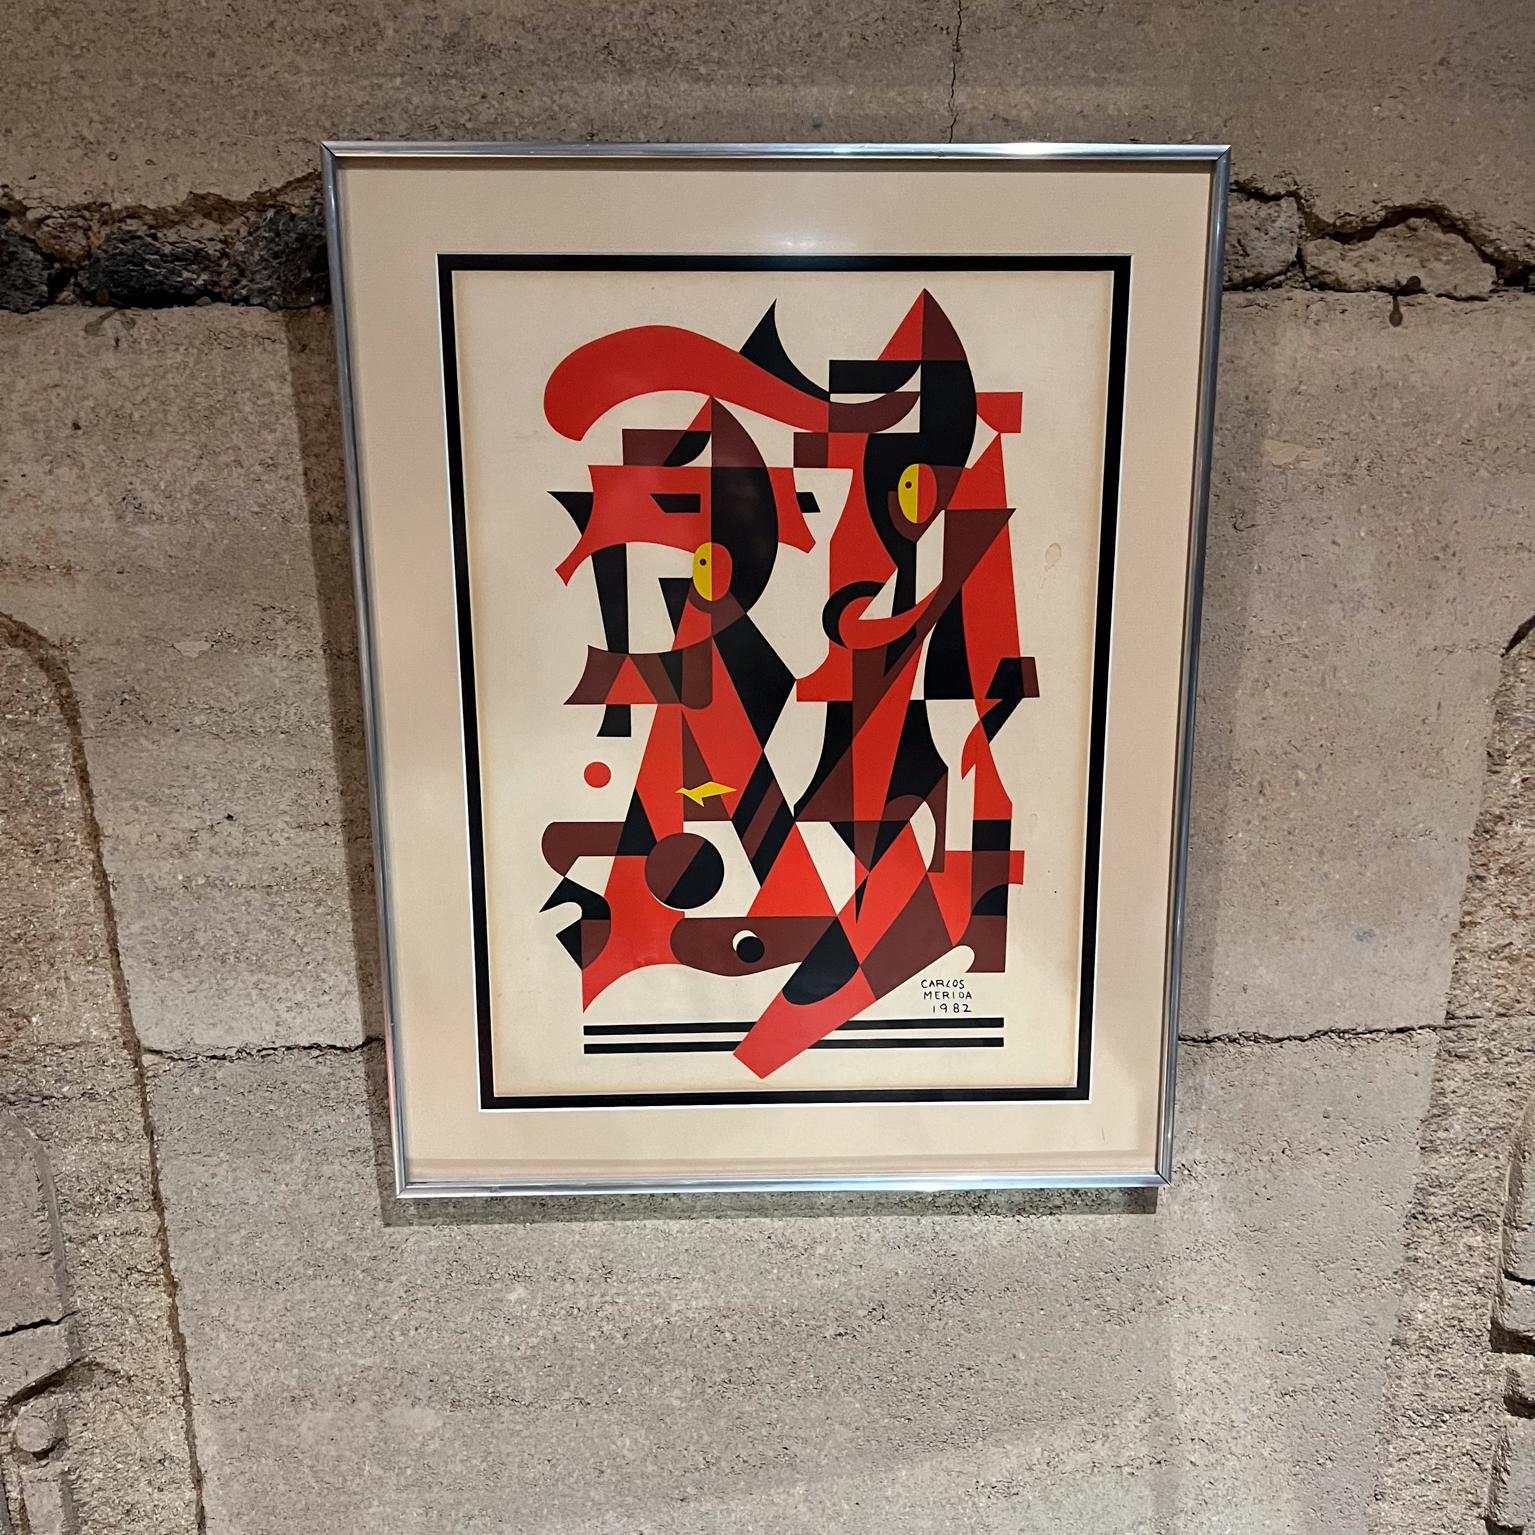 1982 Carlos Mérida Modernistisches Kunstwerk Kubist
Lithographie Papier Druck Zeichnung
24.75 x 17.5 x .88
Gebrauchter originaler unrestaurierter Vintage-Zustand. Das Papier weist Altersspuren auf.
Sehen Sie sich bitte alle Bilder an.